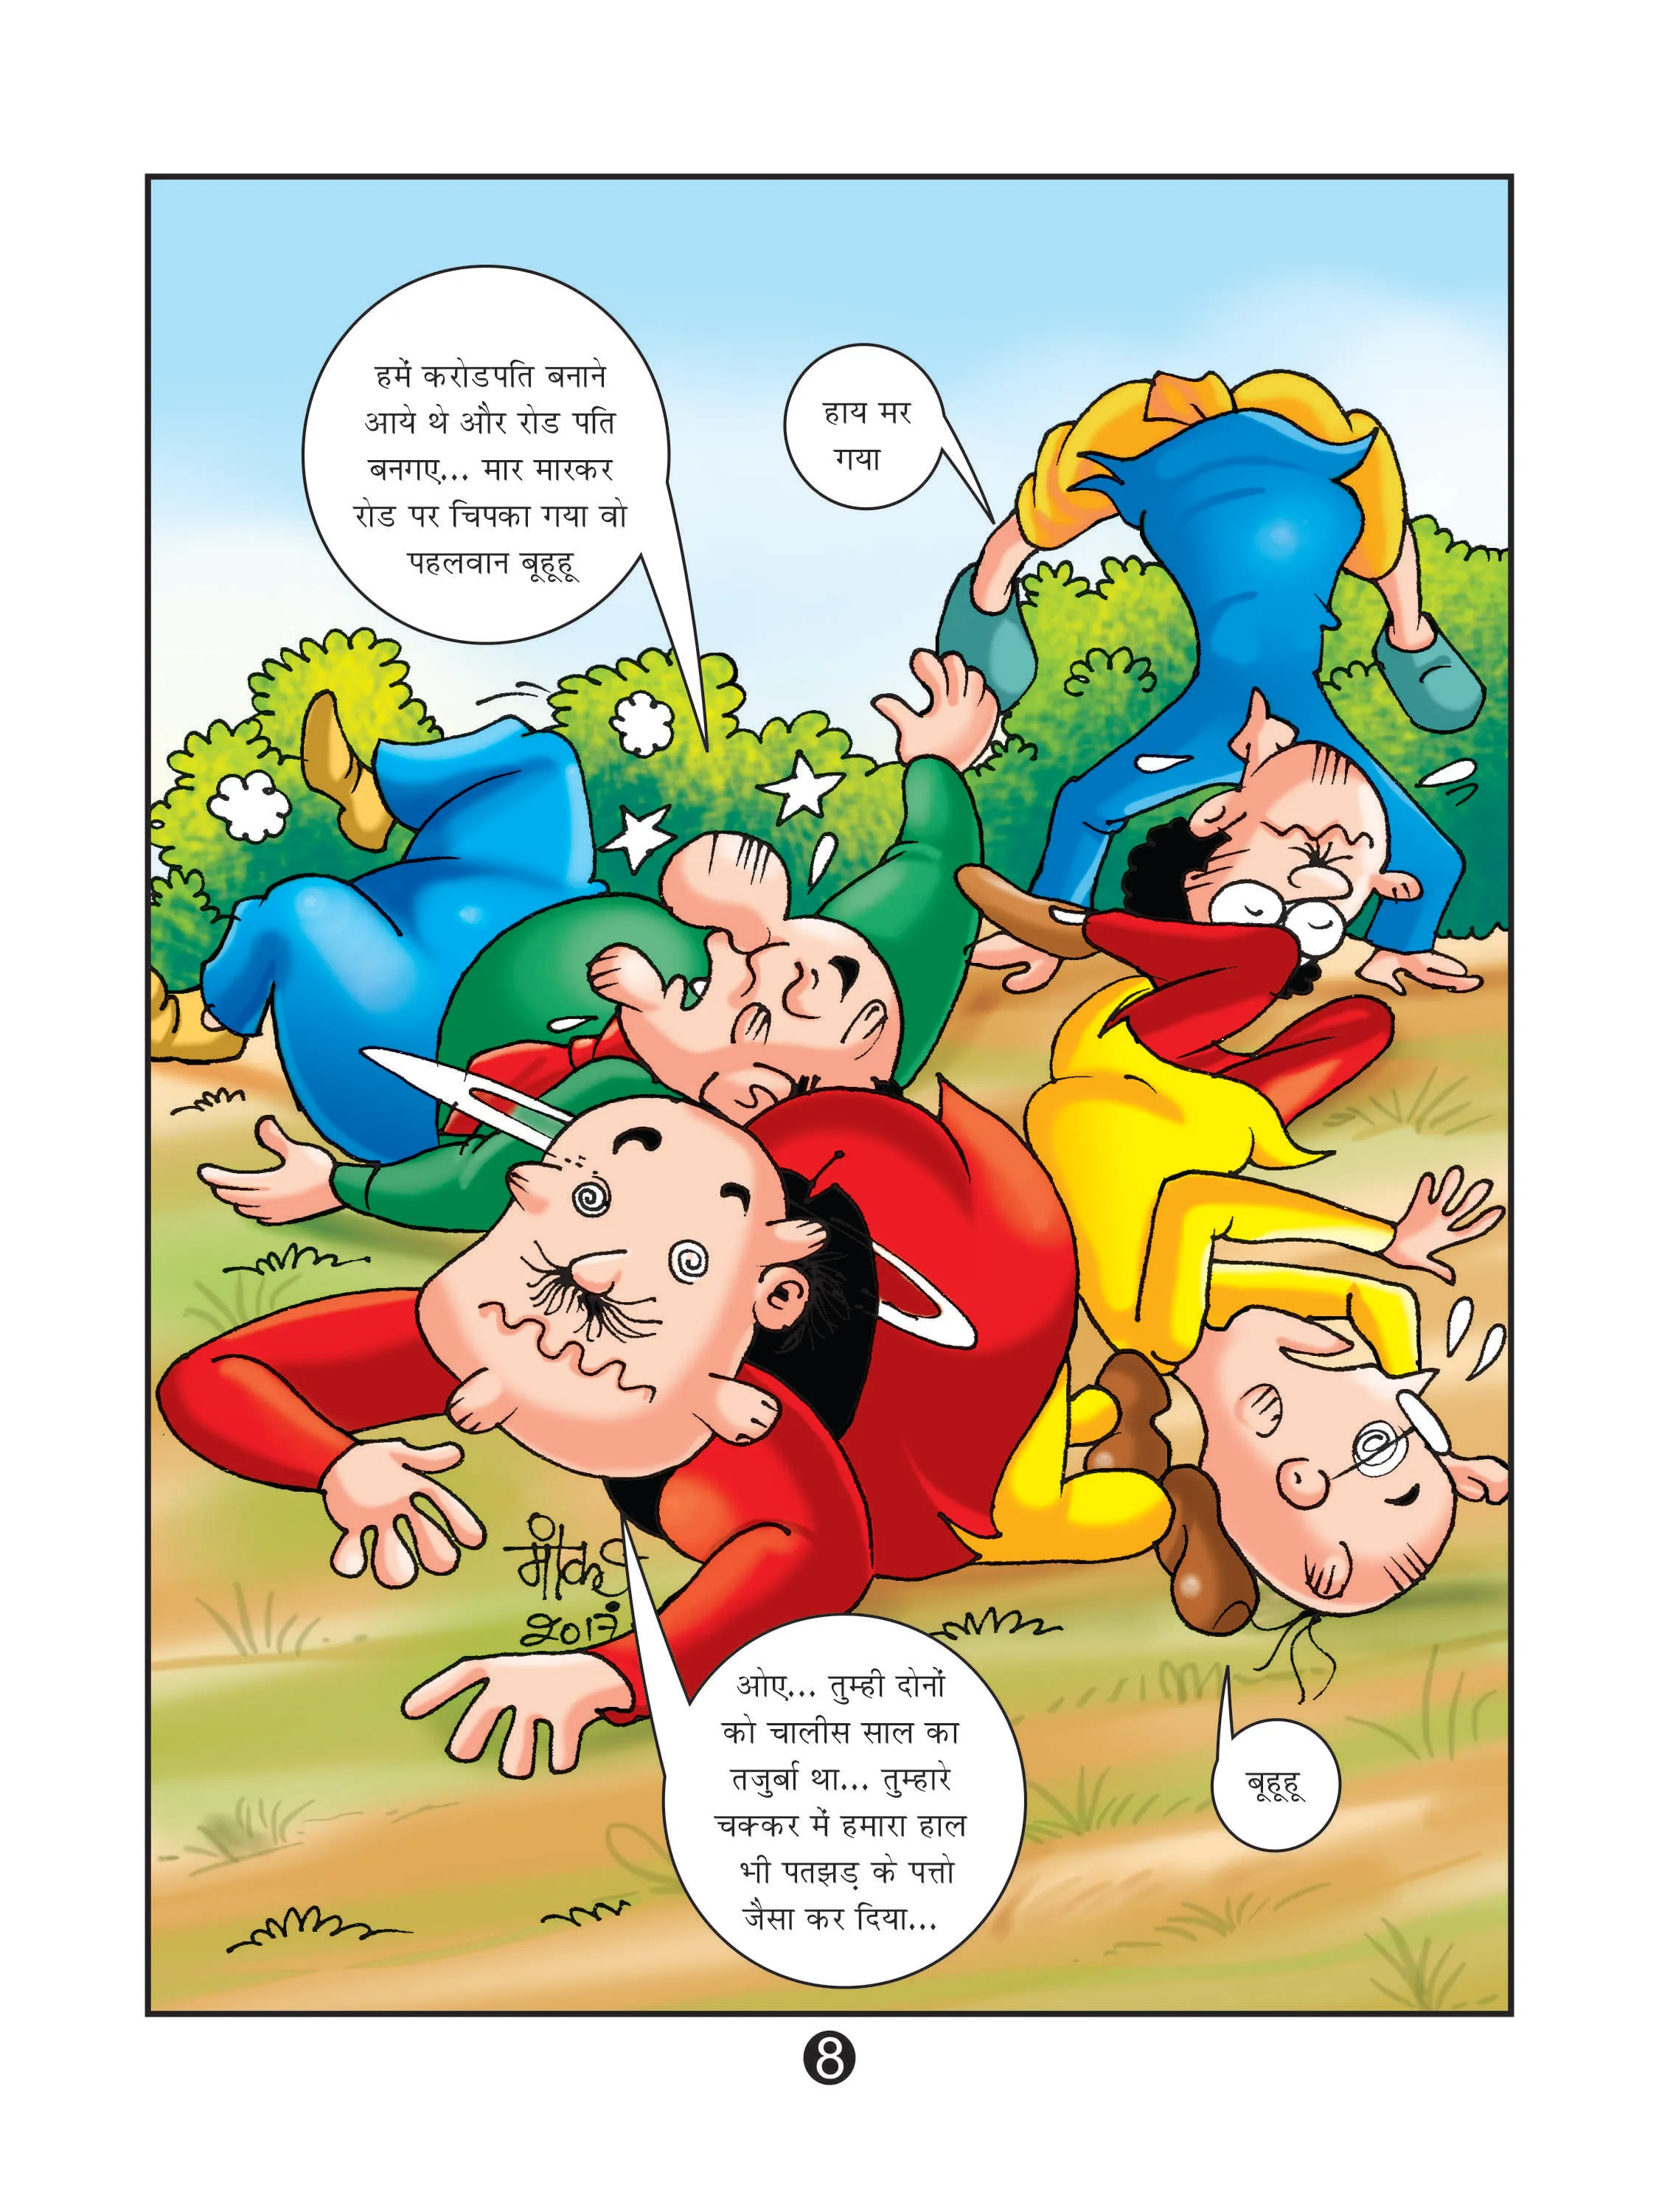 Lotpot E-Comics cartoon character Motu Patlu